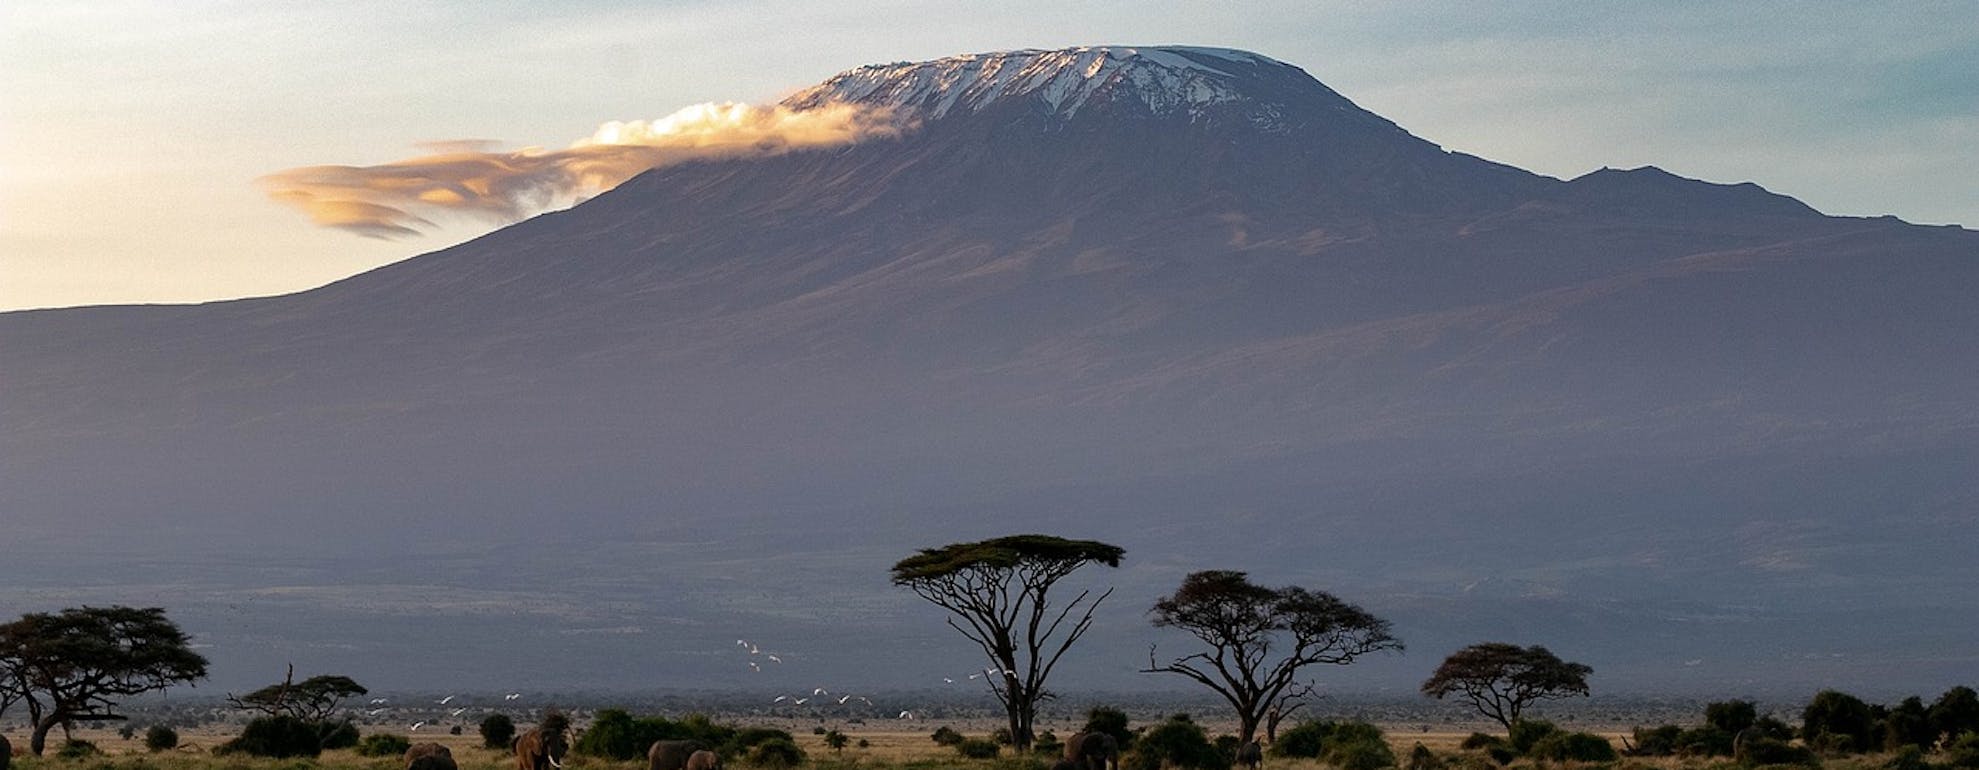 Guide de randonnée - Ascension du Kilimanjaro